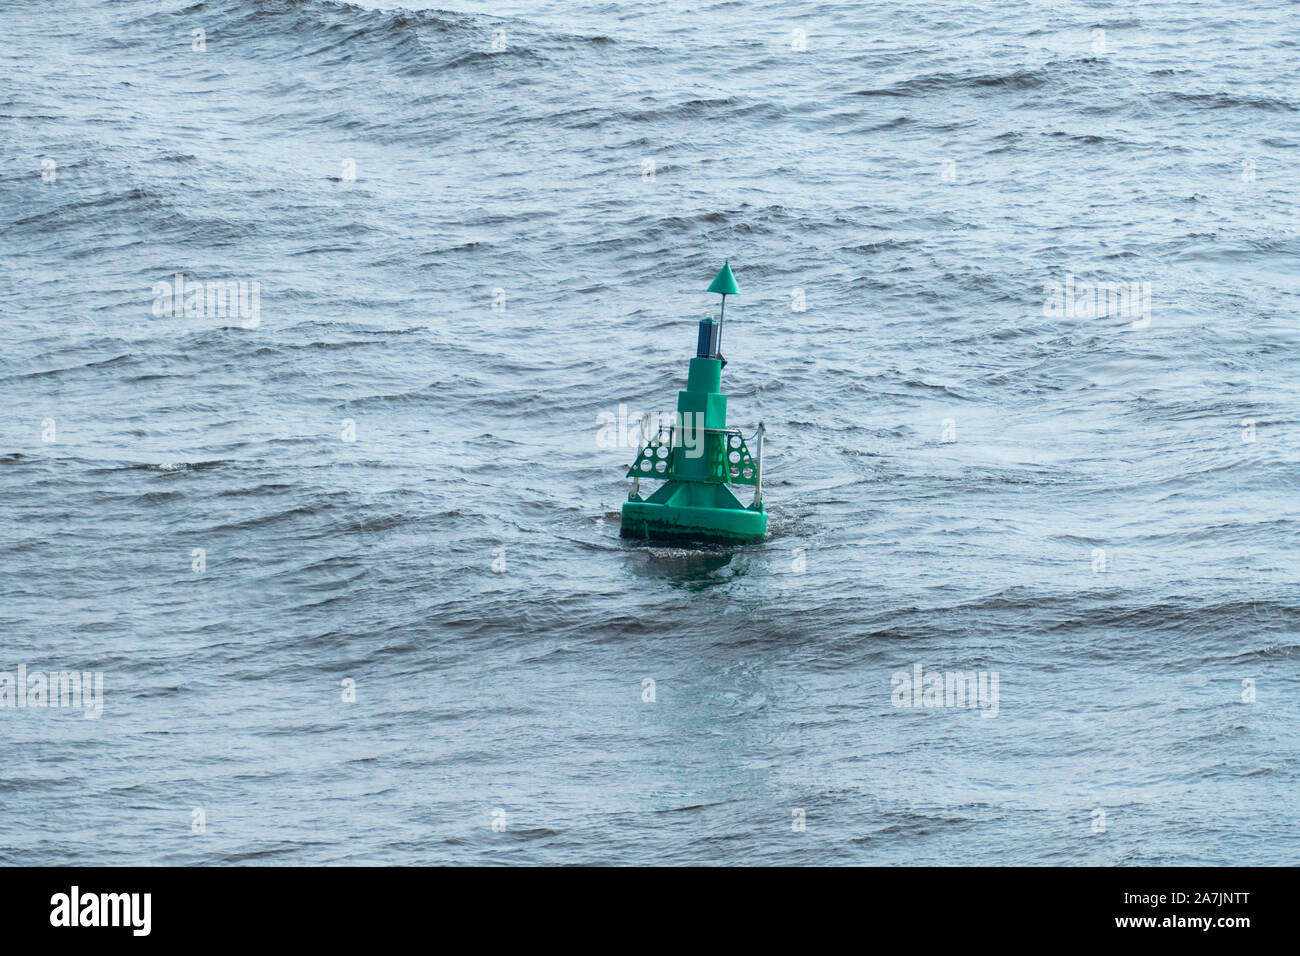 Boje, grüne Markierung für Schiffe in der Nordsee Foto Stock